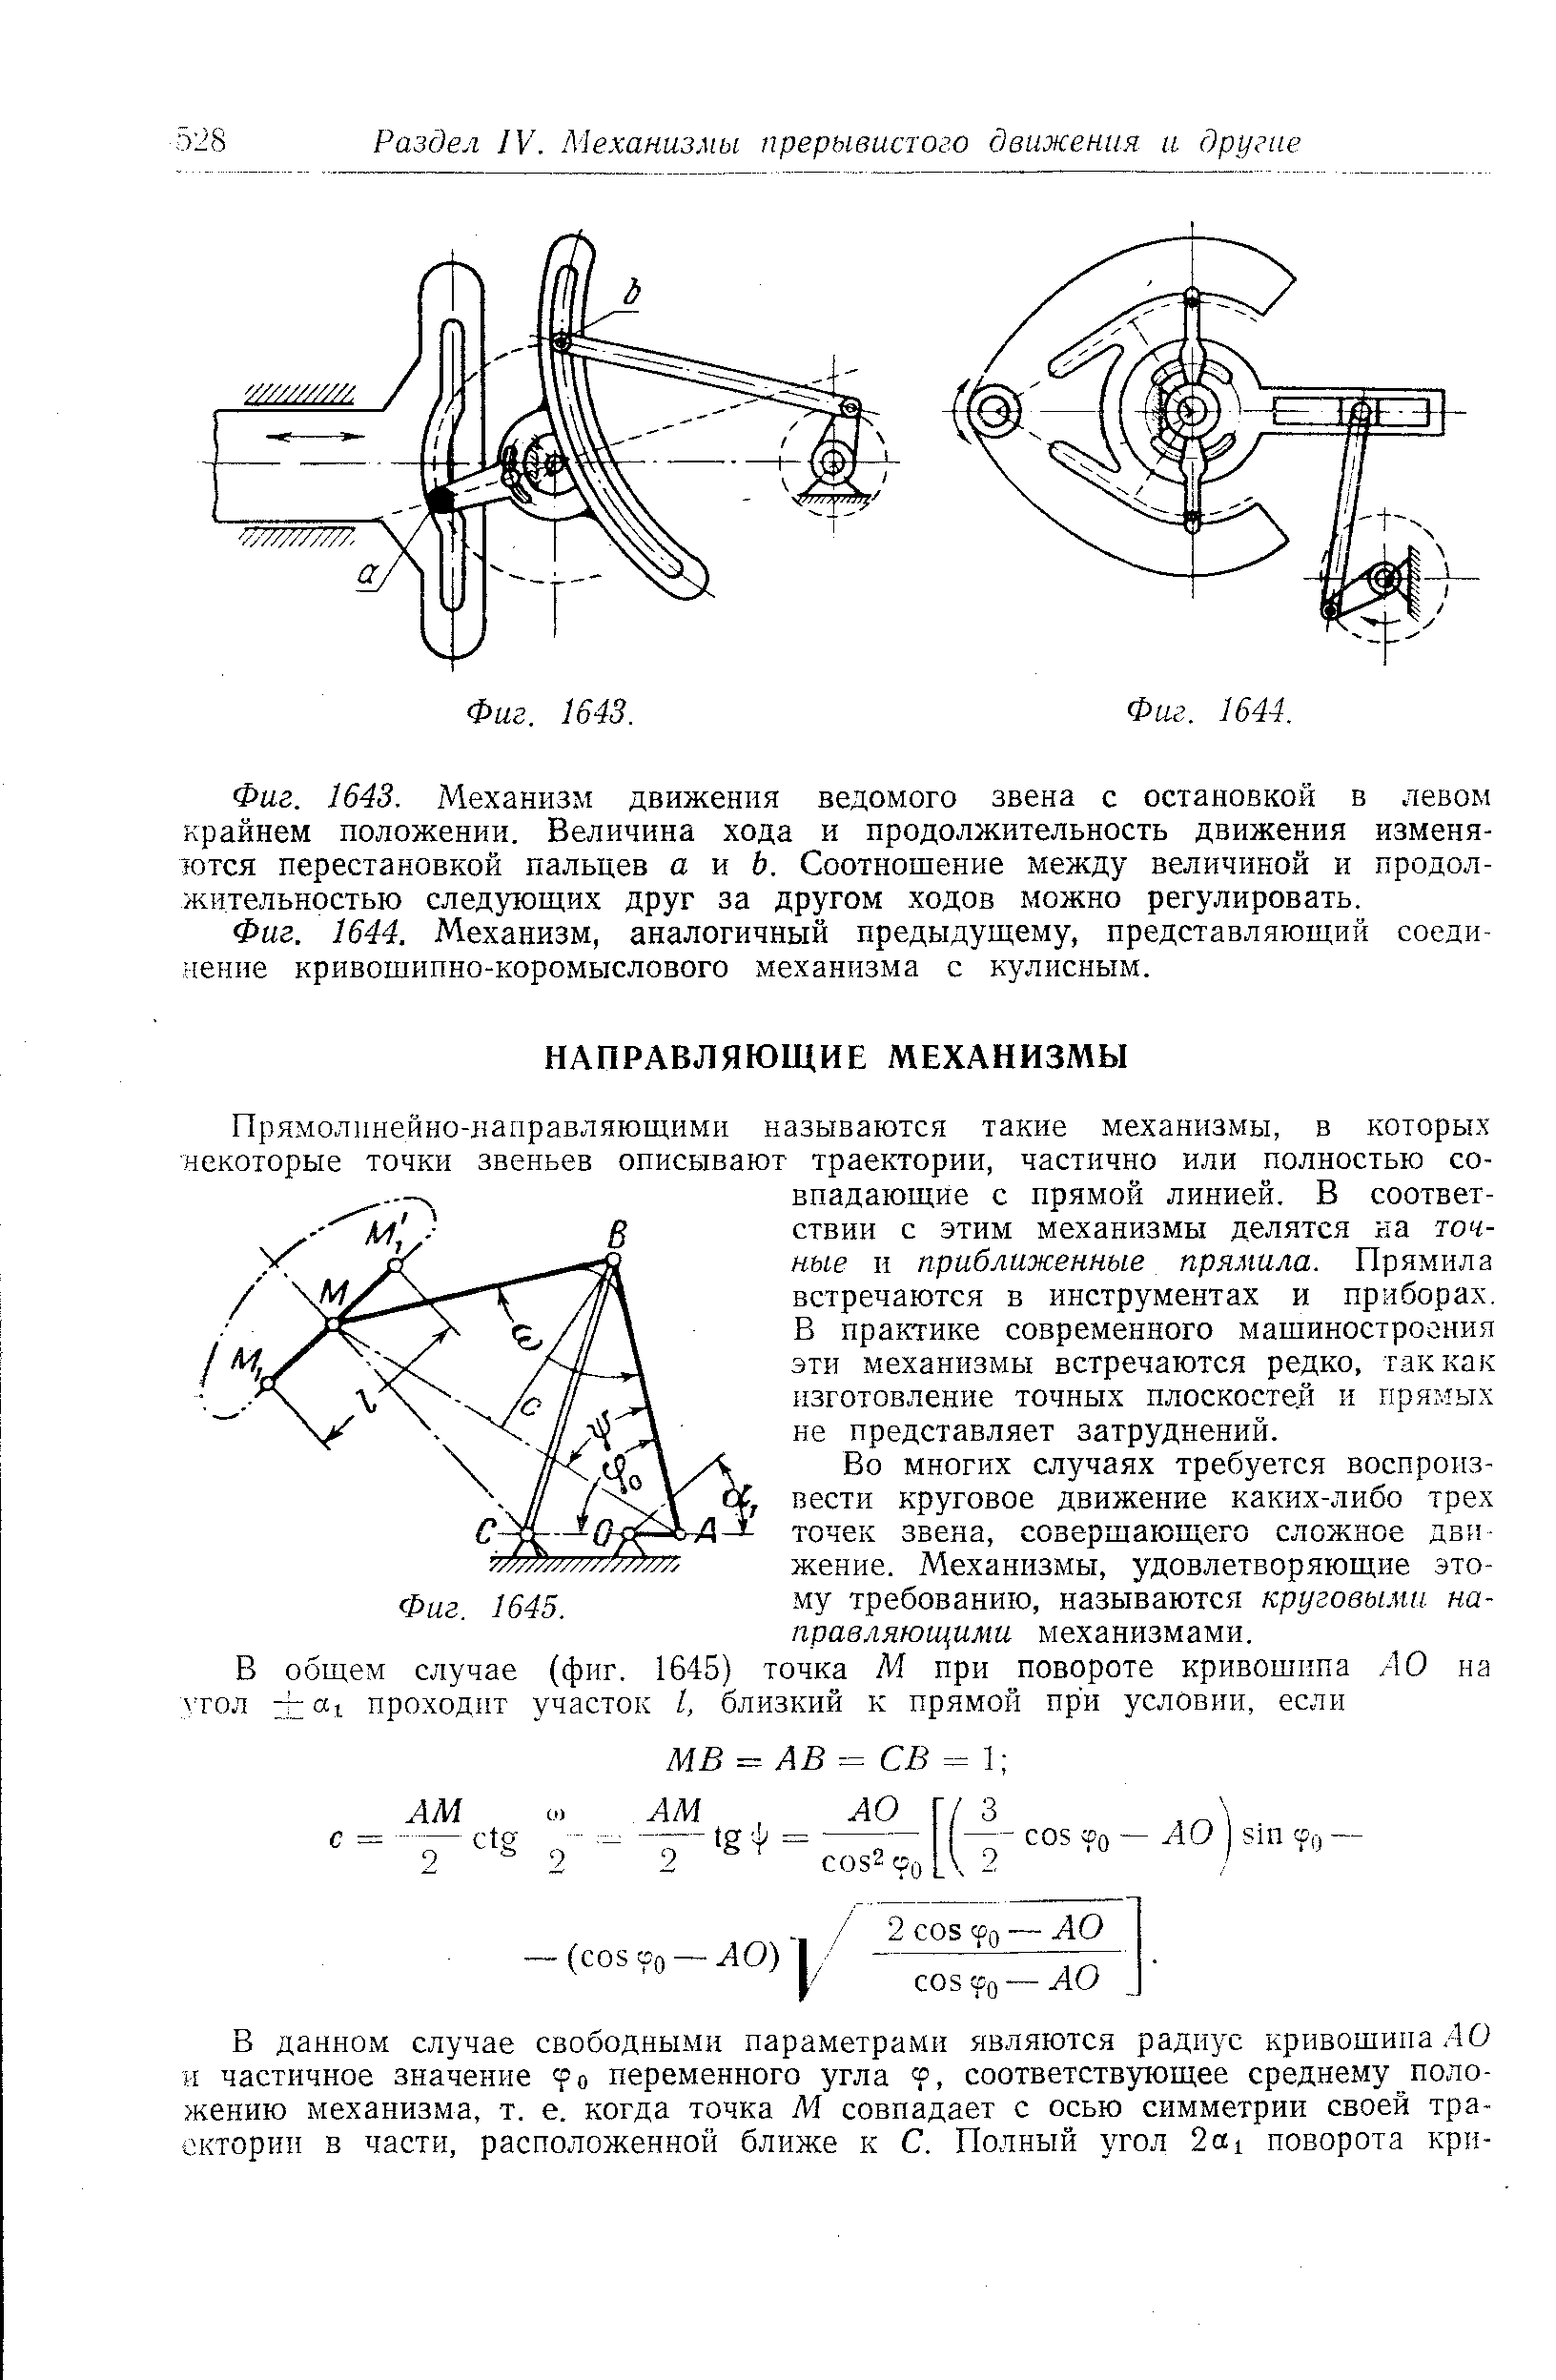 Фиг. 1644. Механизм, аналогичный предыдущему, представляющий соединение <a href="/info/1925">кривошипно-коромыслового механизма</a> с кулисным.
